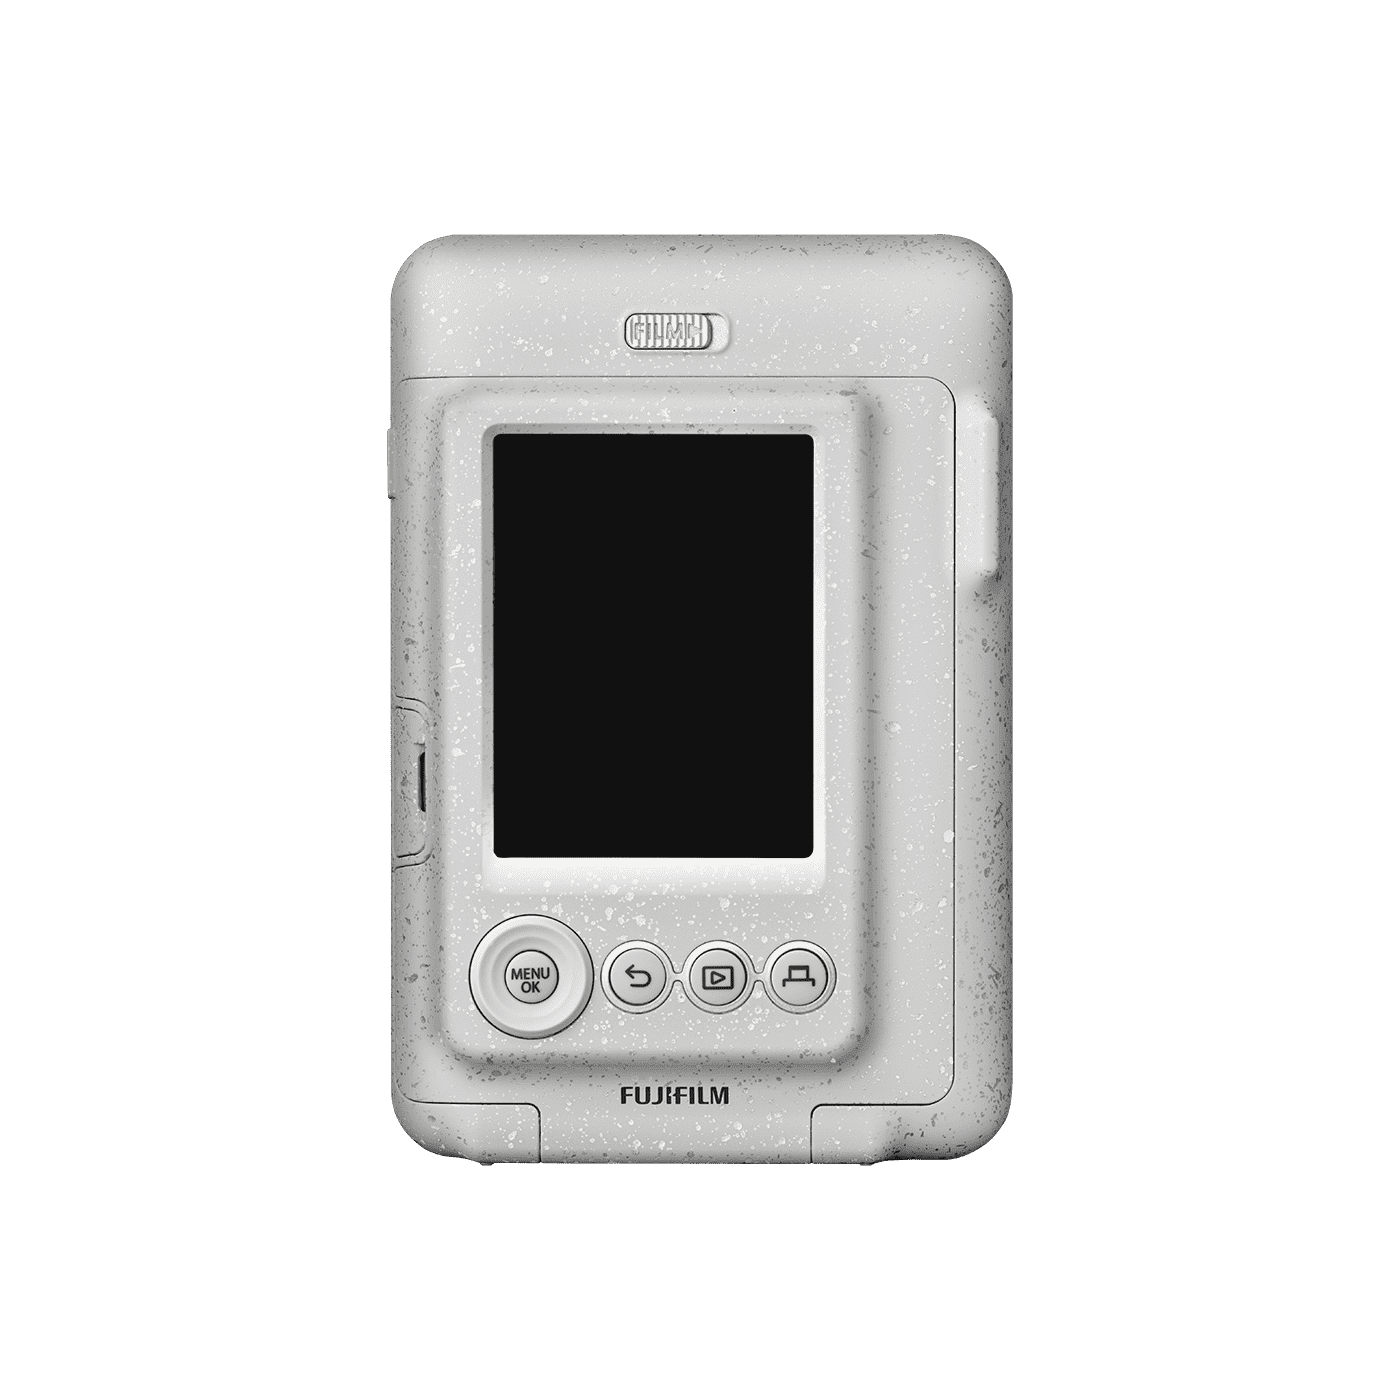 Instax mini LiPlay – Camera Go Camera